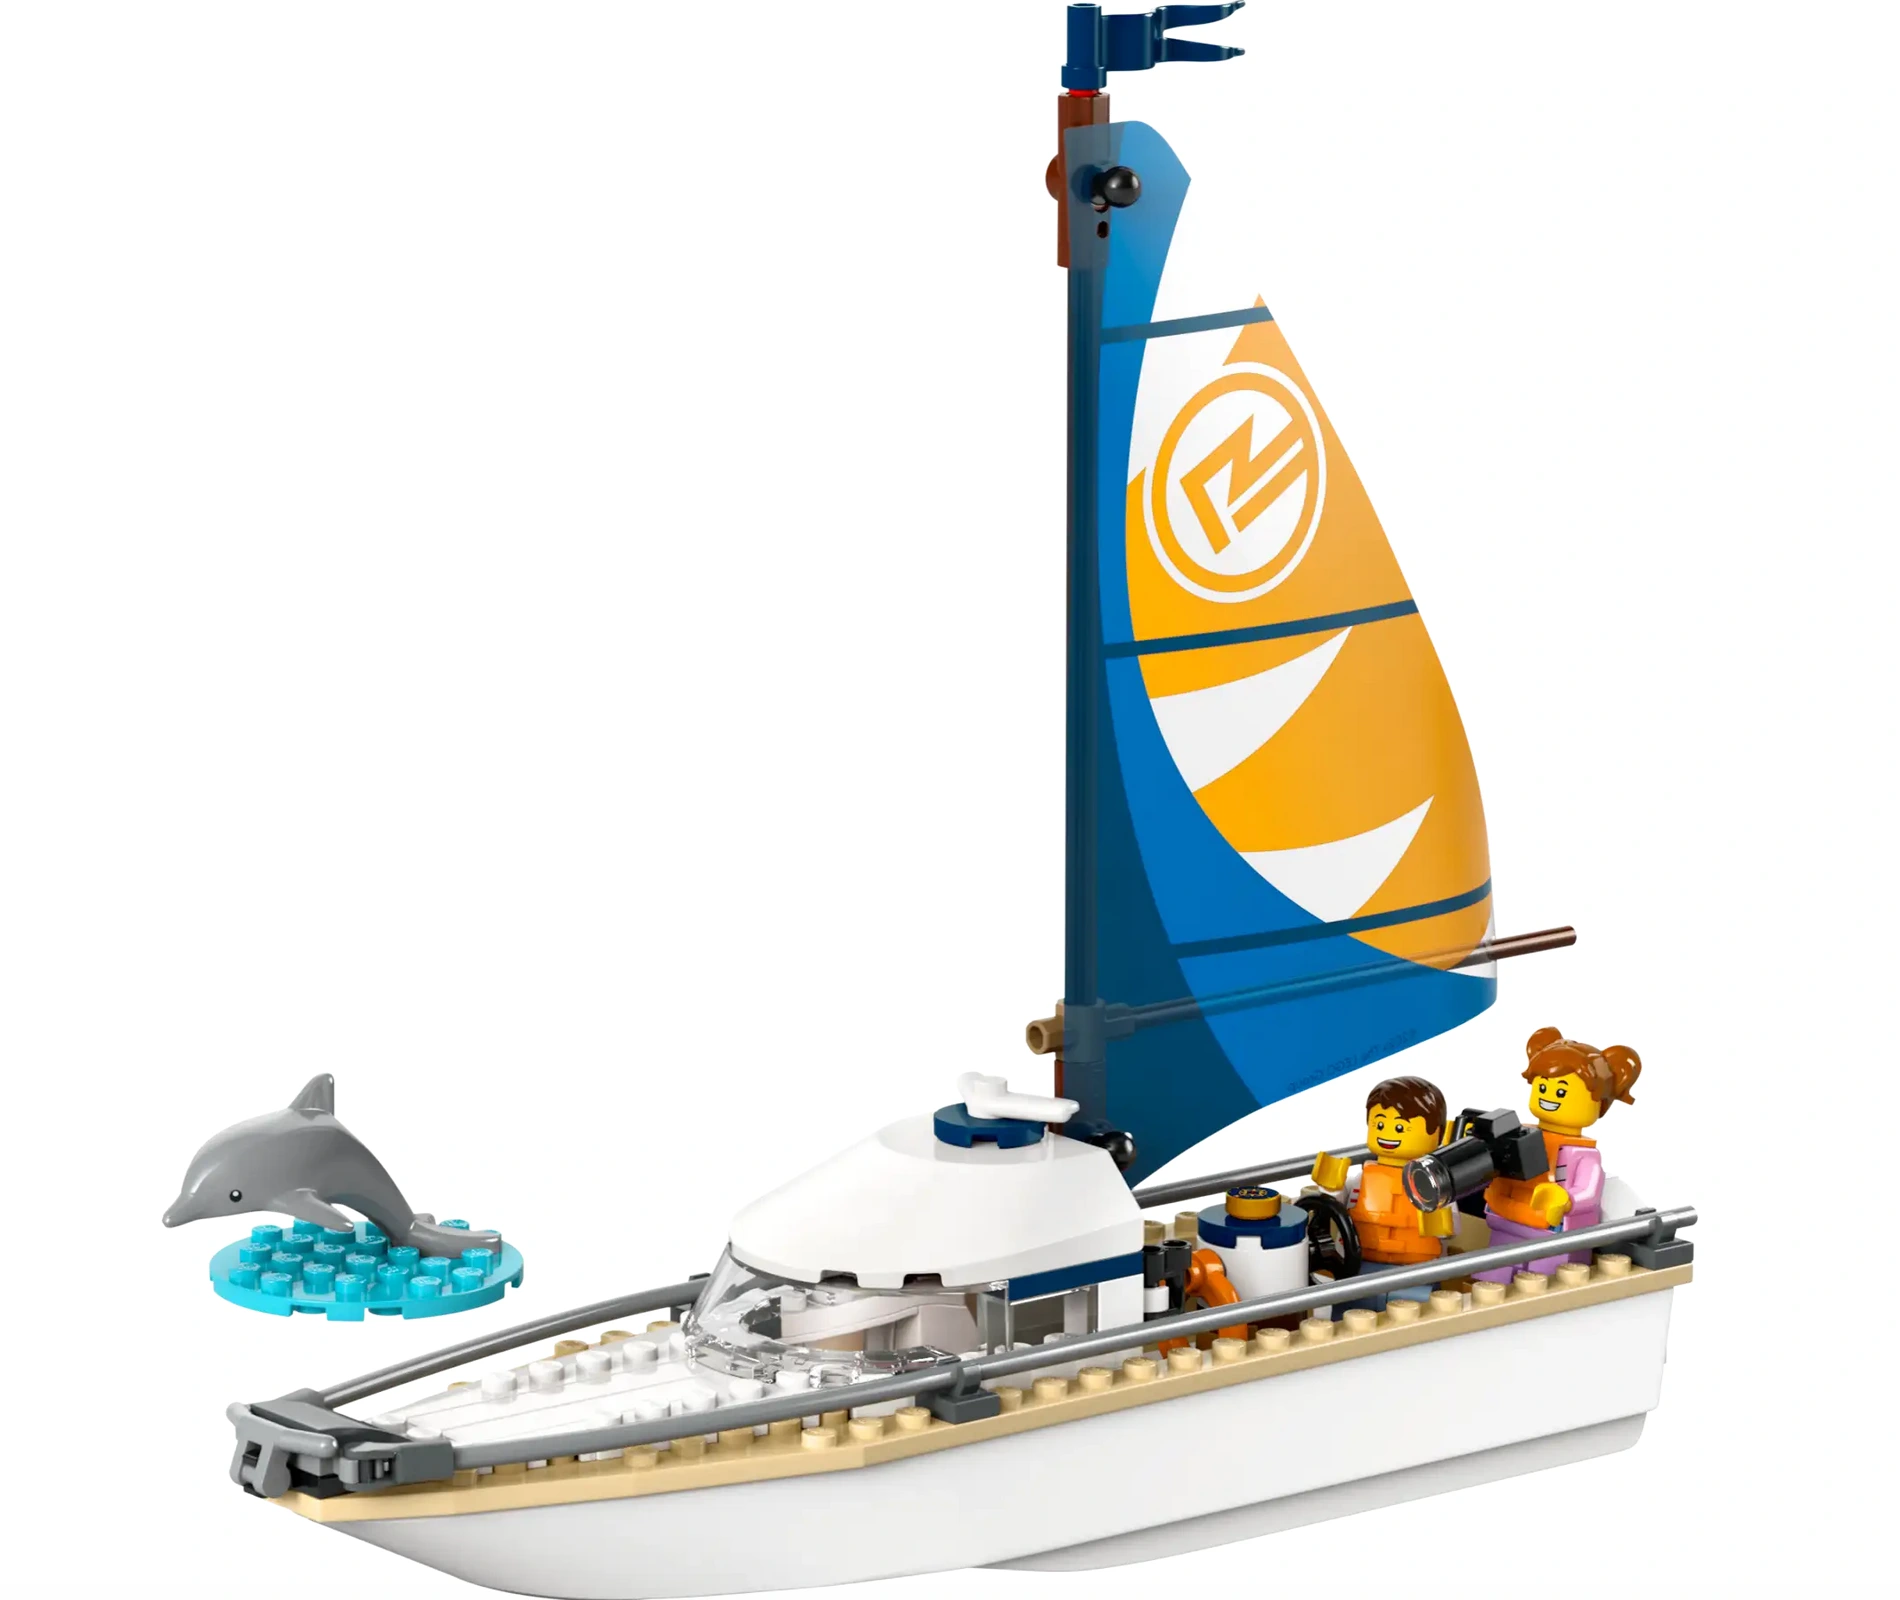 Sailboat LEGO Set - Source The LEGO GroupSailboat